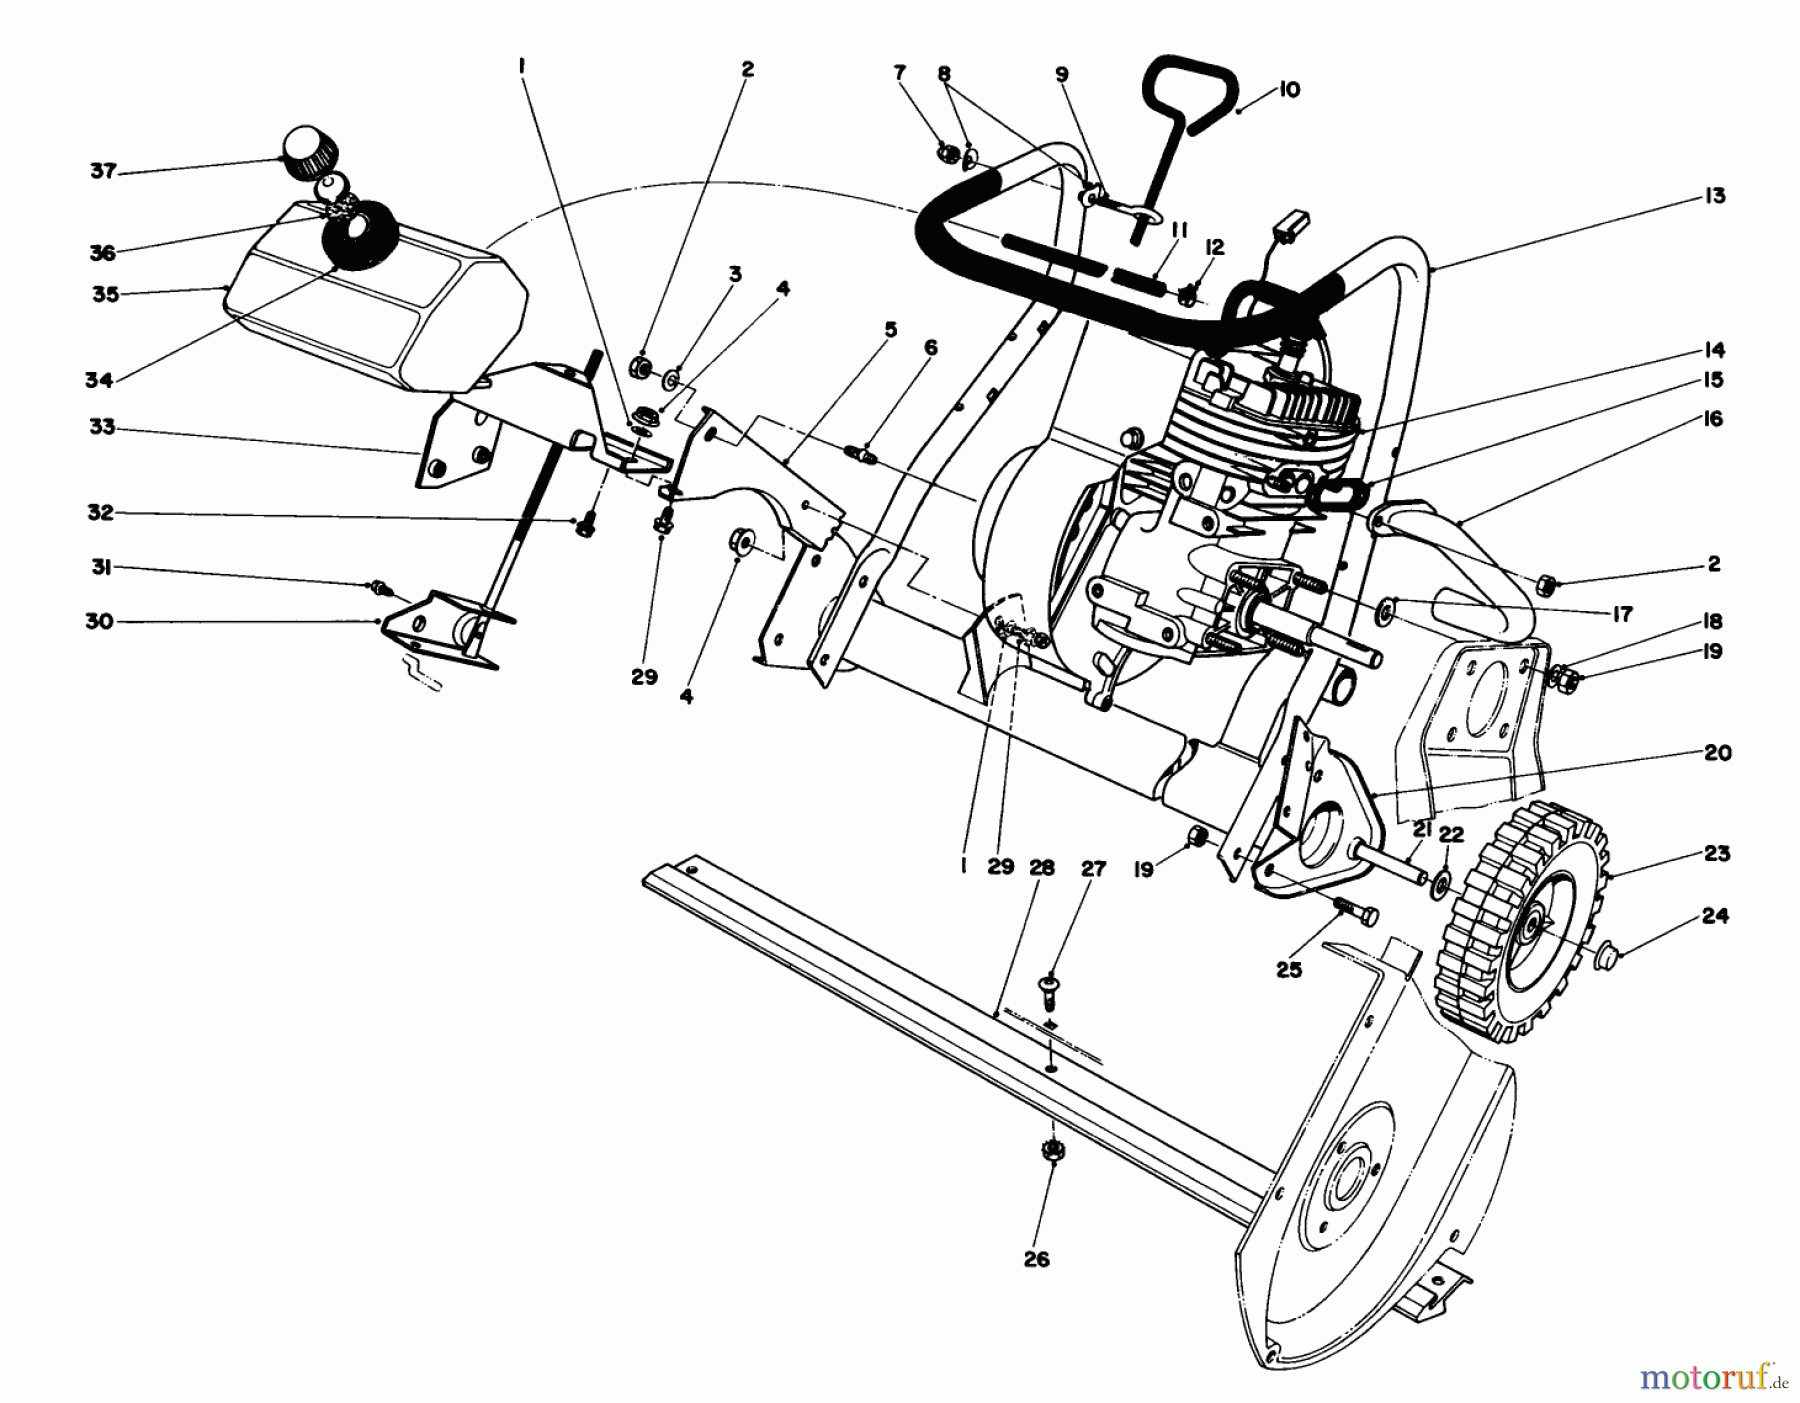  Toro Neu Snow Blowers/Snow Throwers Seite 1 38165C (S-620) - Toro S-620 Snowthrower, 1986 (6000001-6999999) ENGINE ASSEMBLY